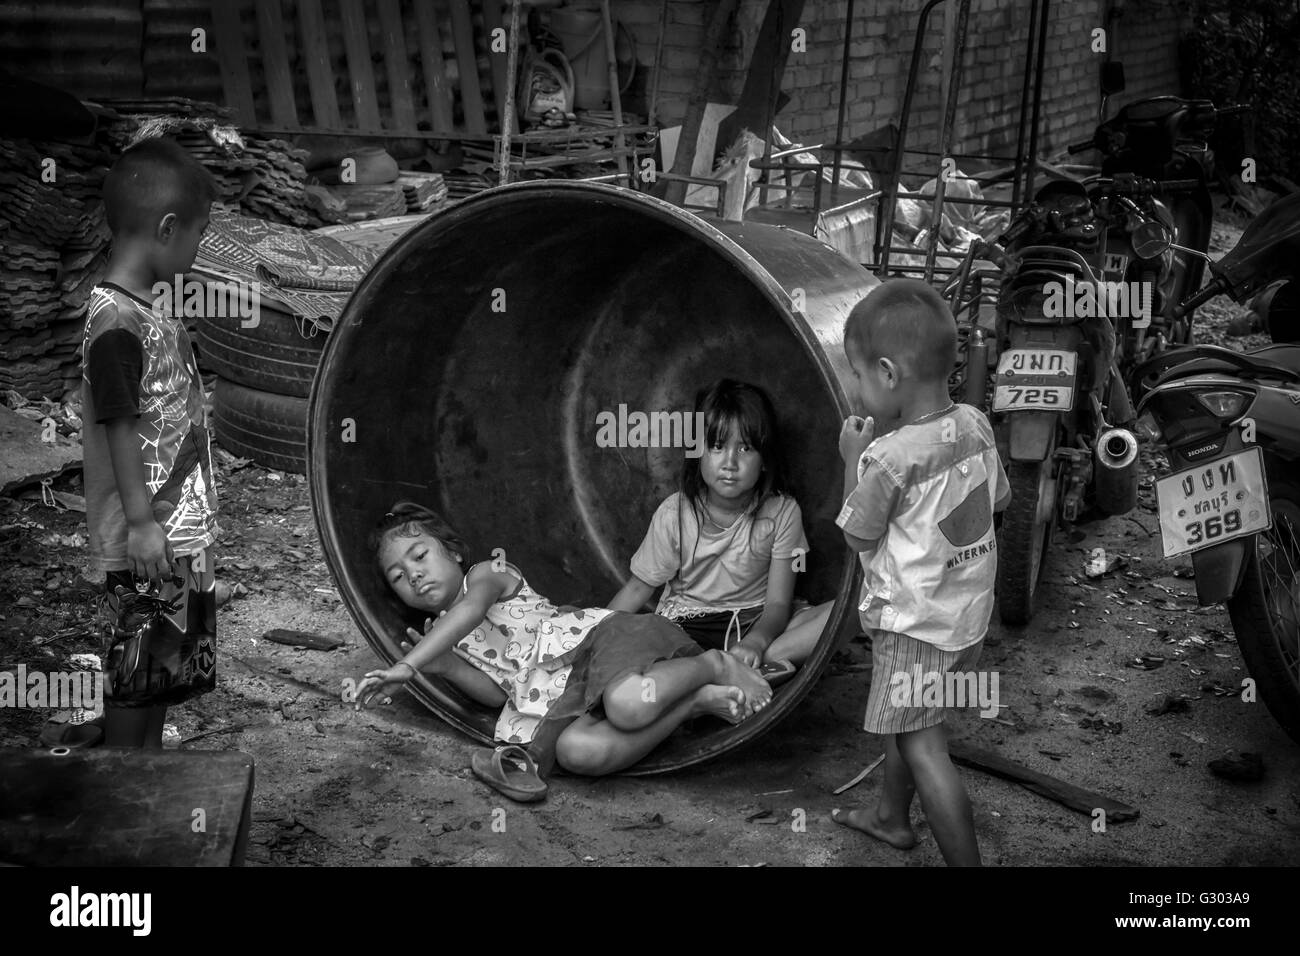 Thailandia povertà. Bambini che giocano tra le macerie in una backstreet tailandese. Thailandia S. E. Asia. Bambini slum. Fotografia in bianco e nero Foto Stock